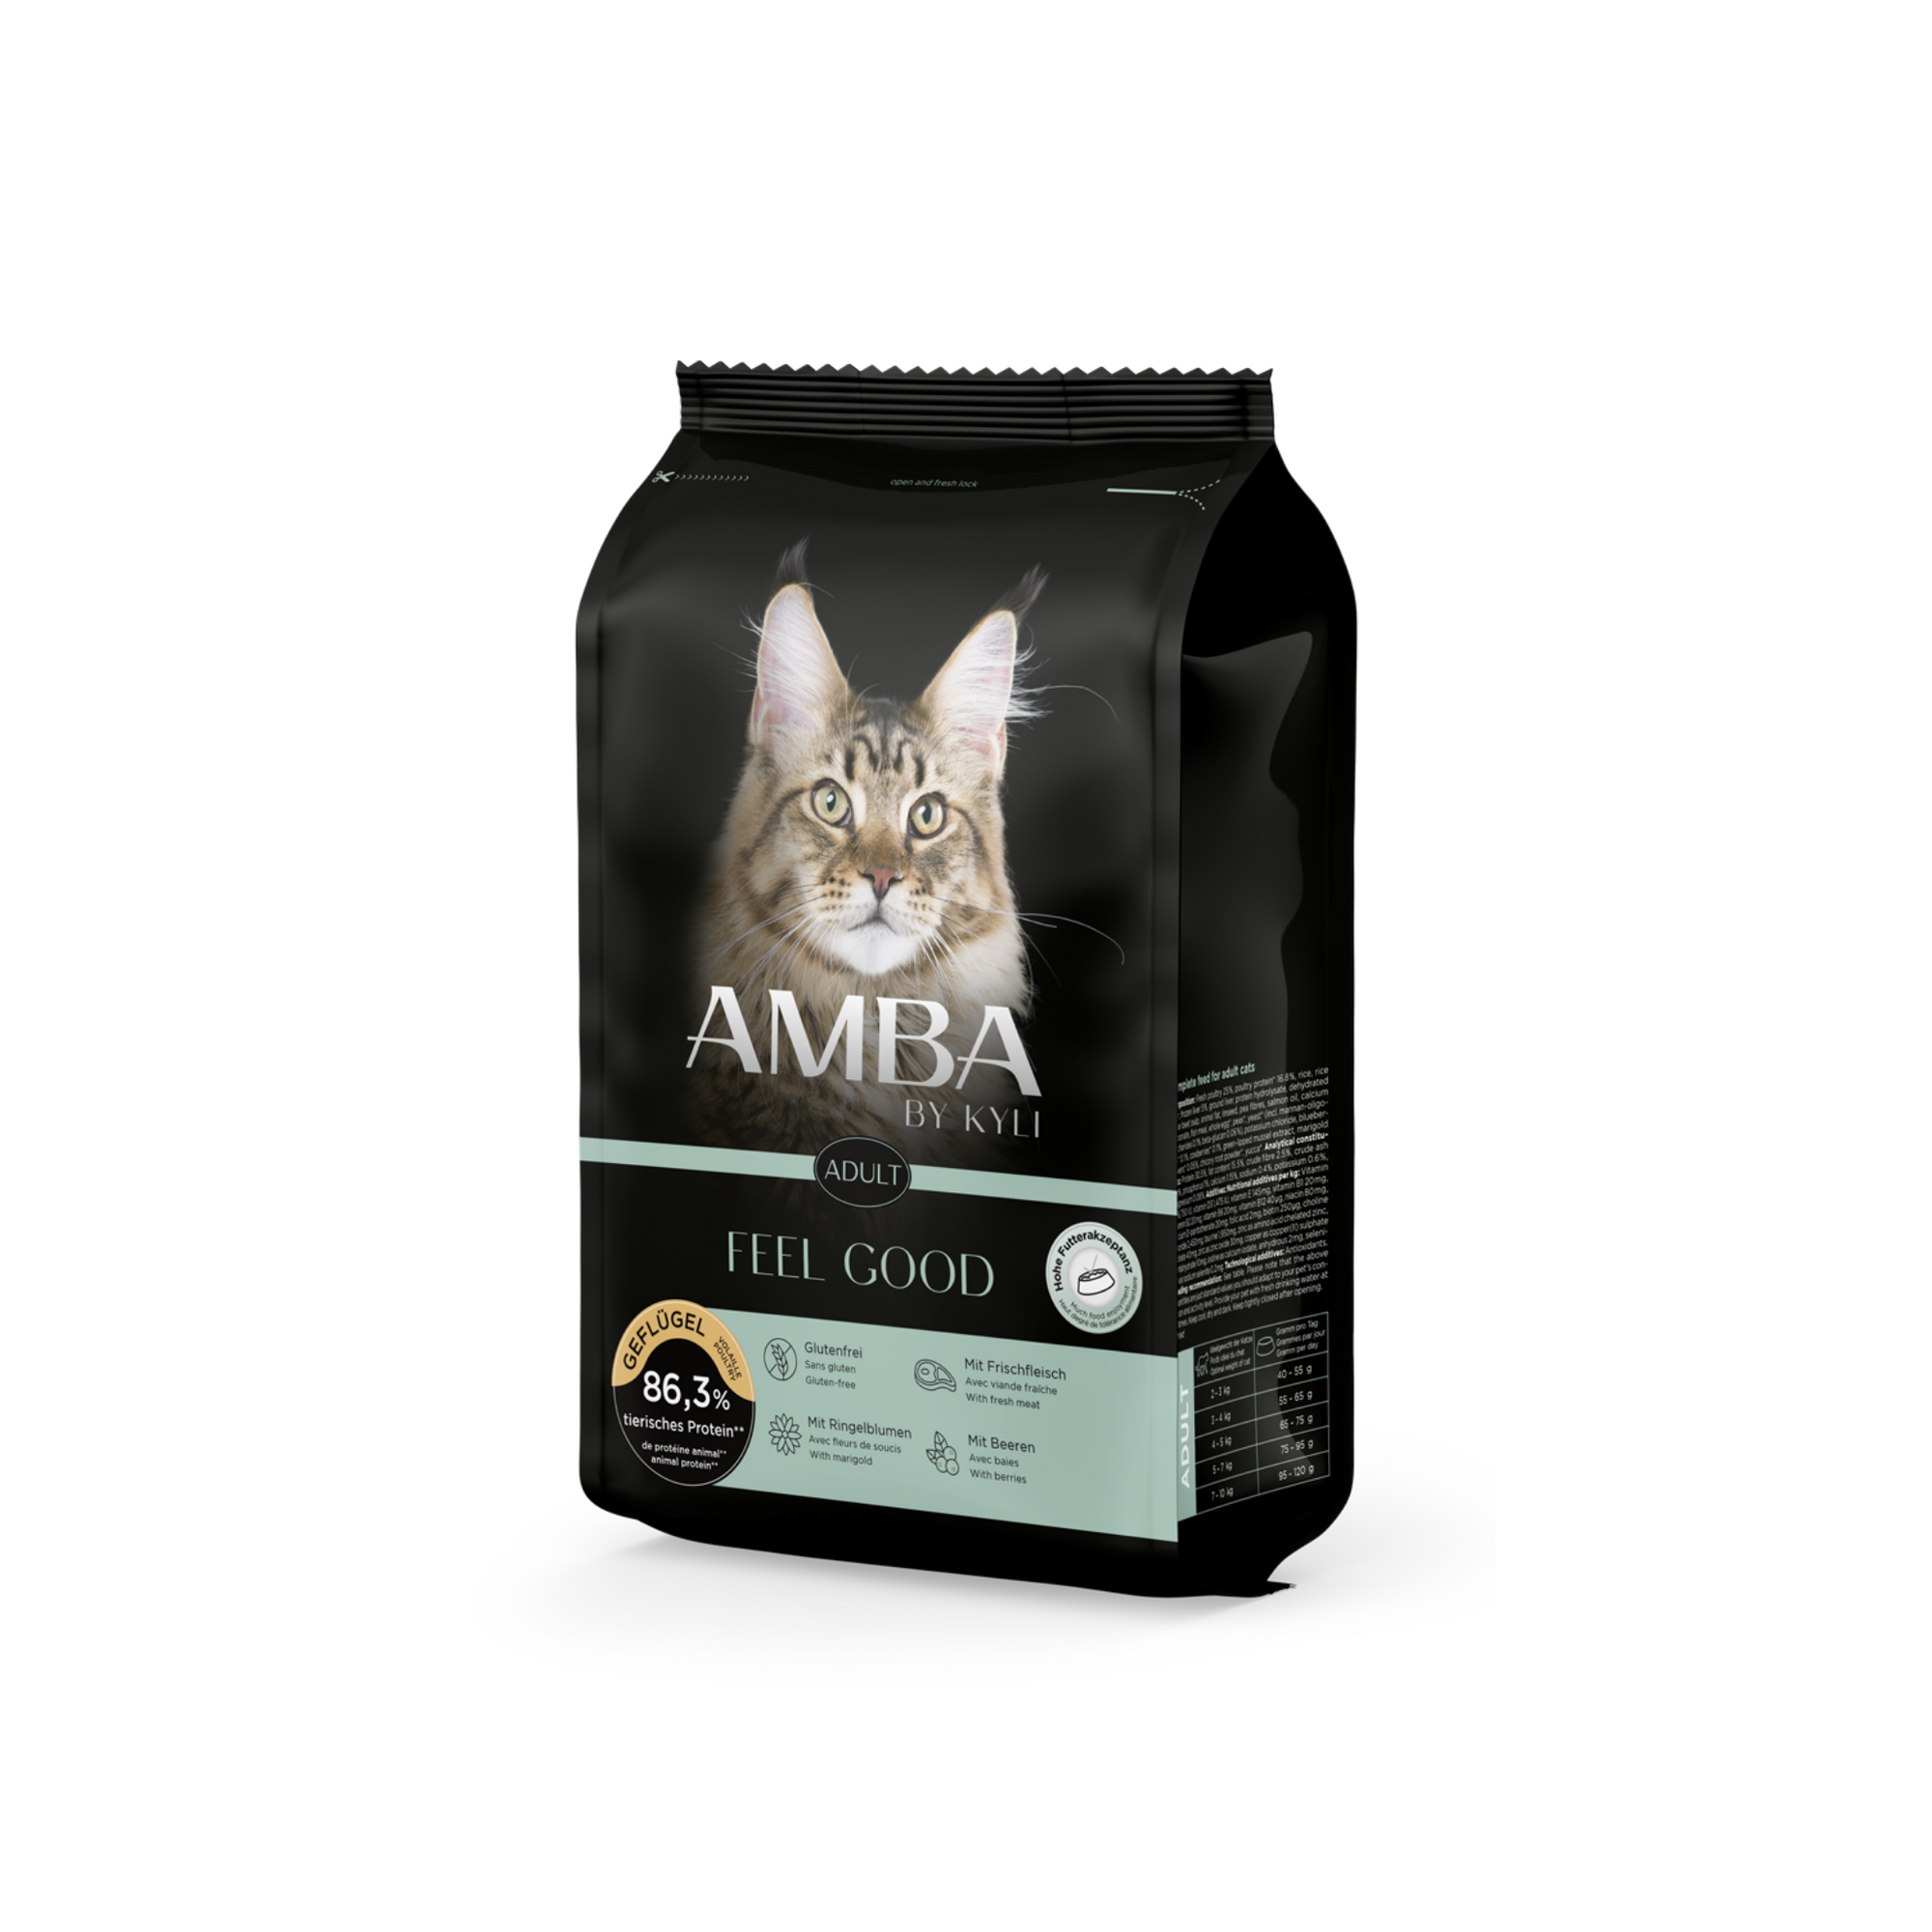 Artikel mit dem Namen AMBA by kyli Feel Good im Shop von zoo.de , dem Onlineshop für nachhaltiges Hundefutter und Katzenfutter.